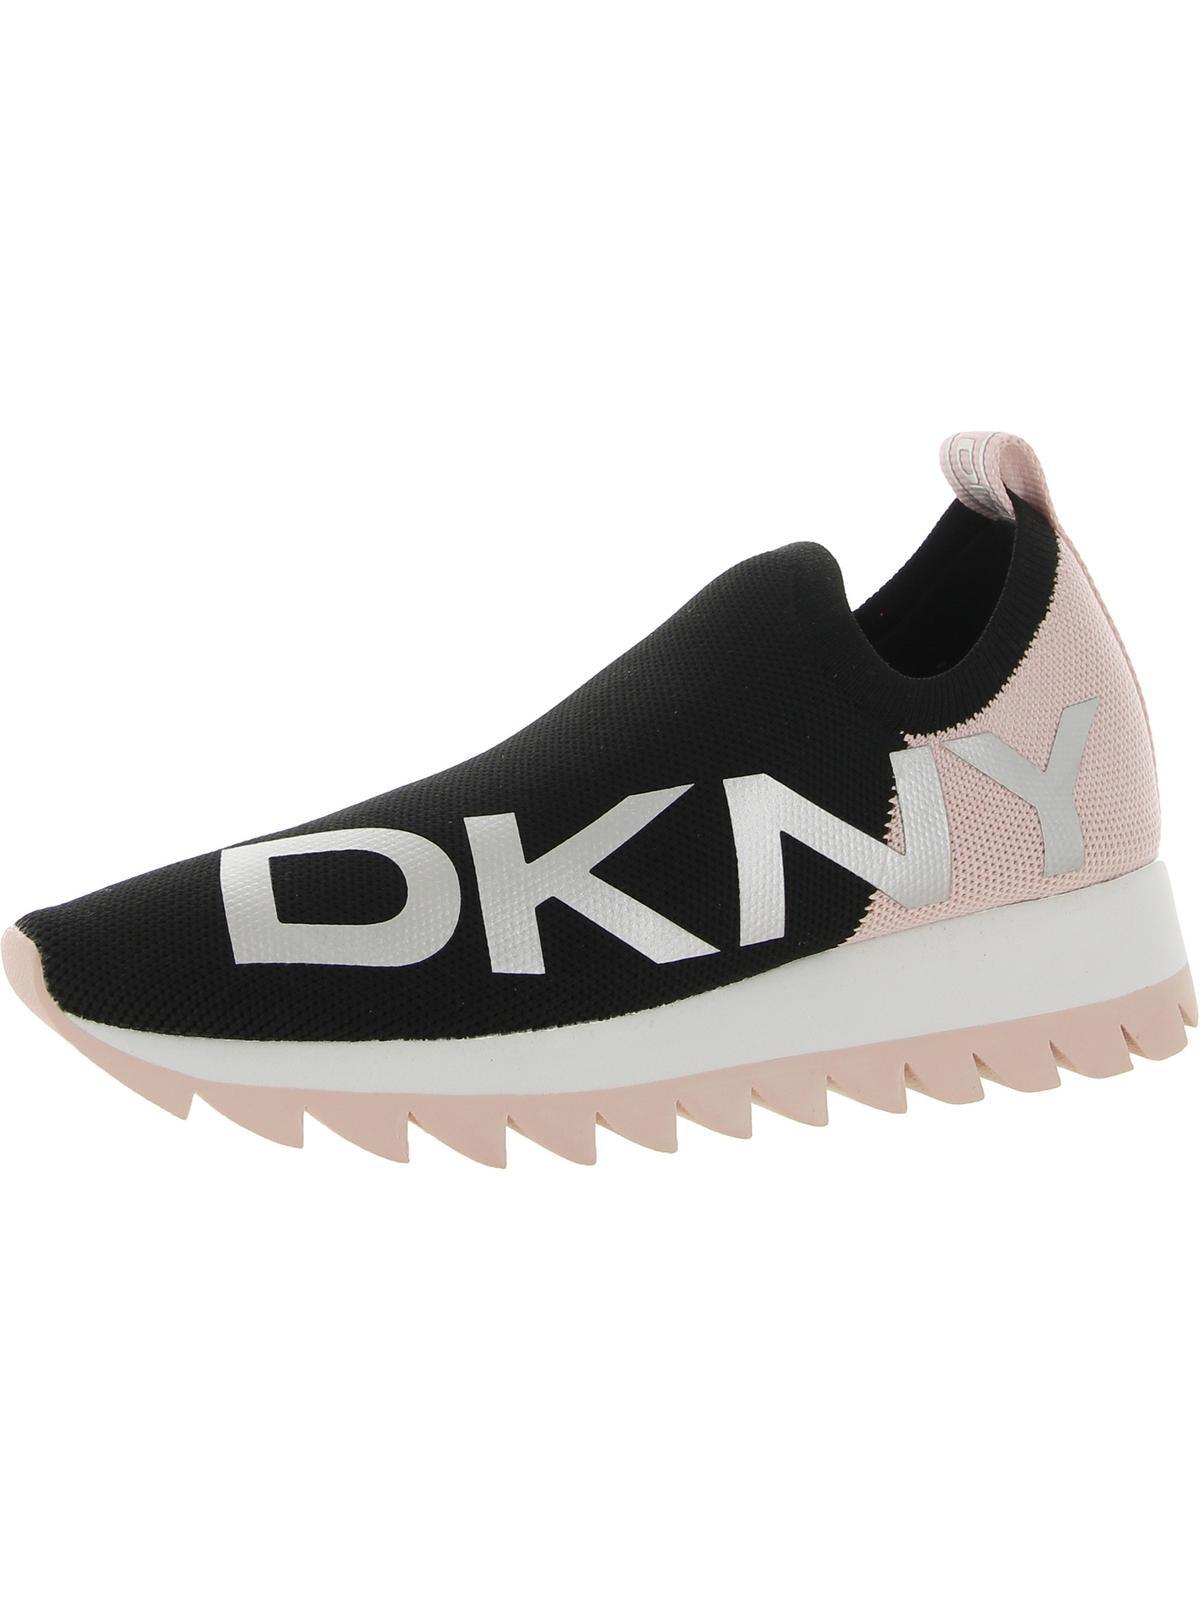 DKNY Azer Neon Knit Slip-on Sneakers in Black | Lyst